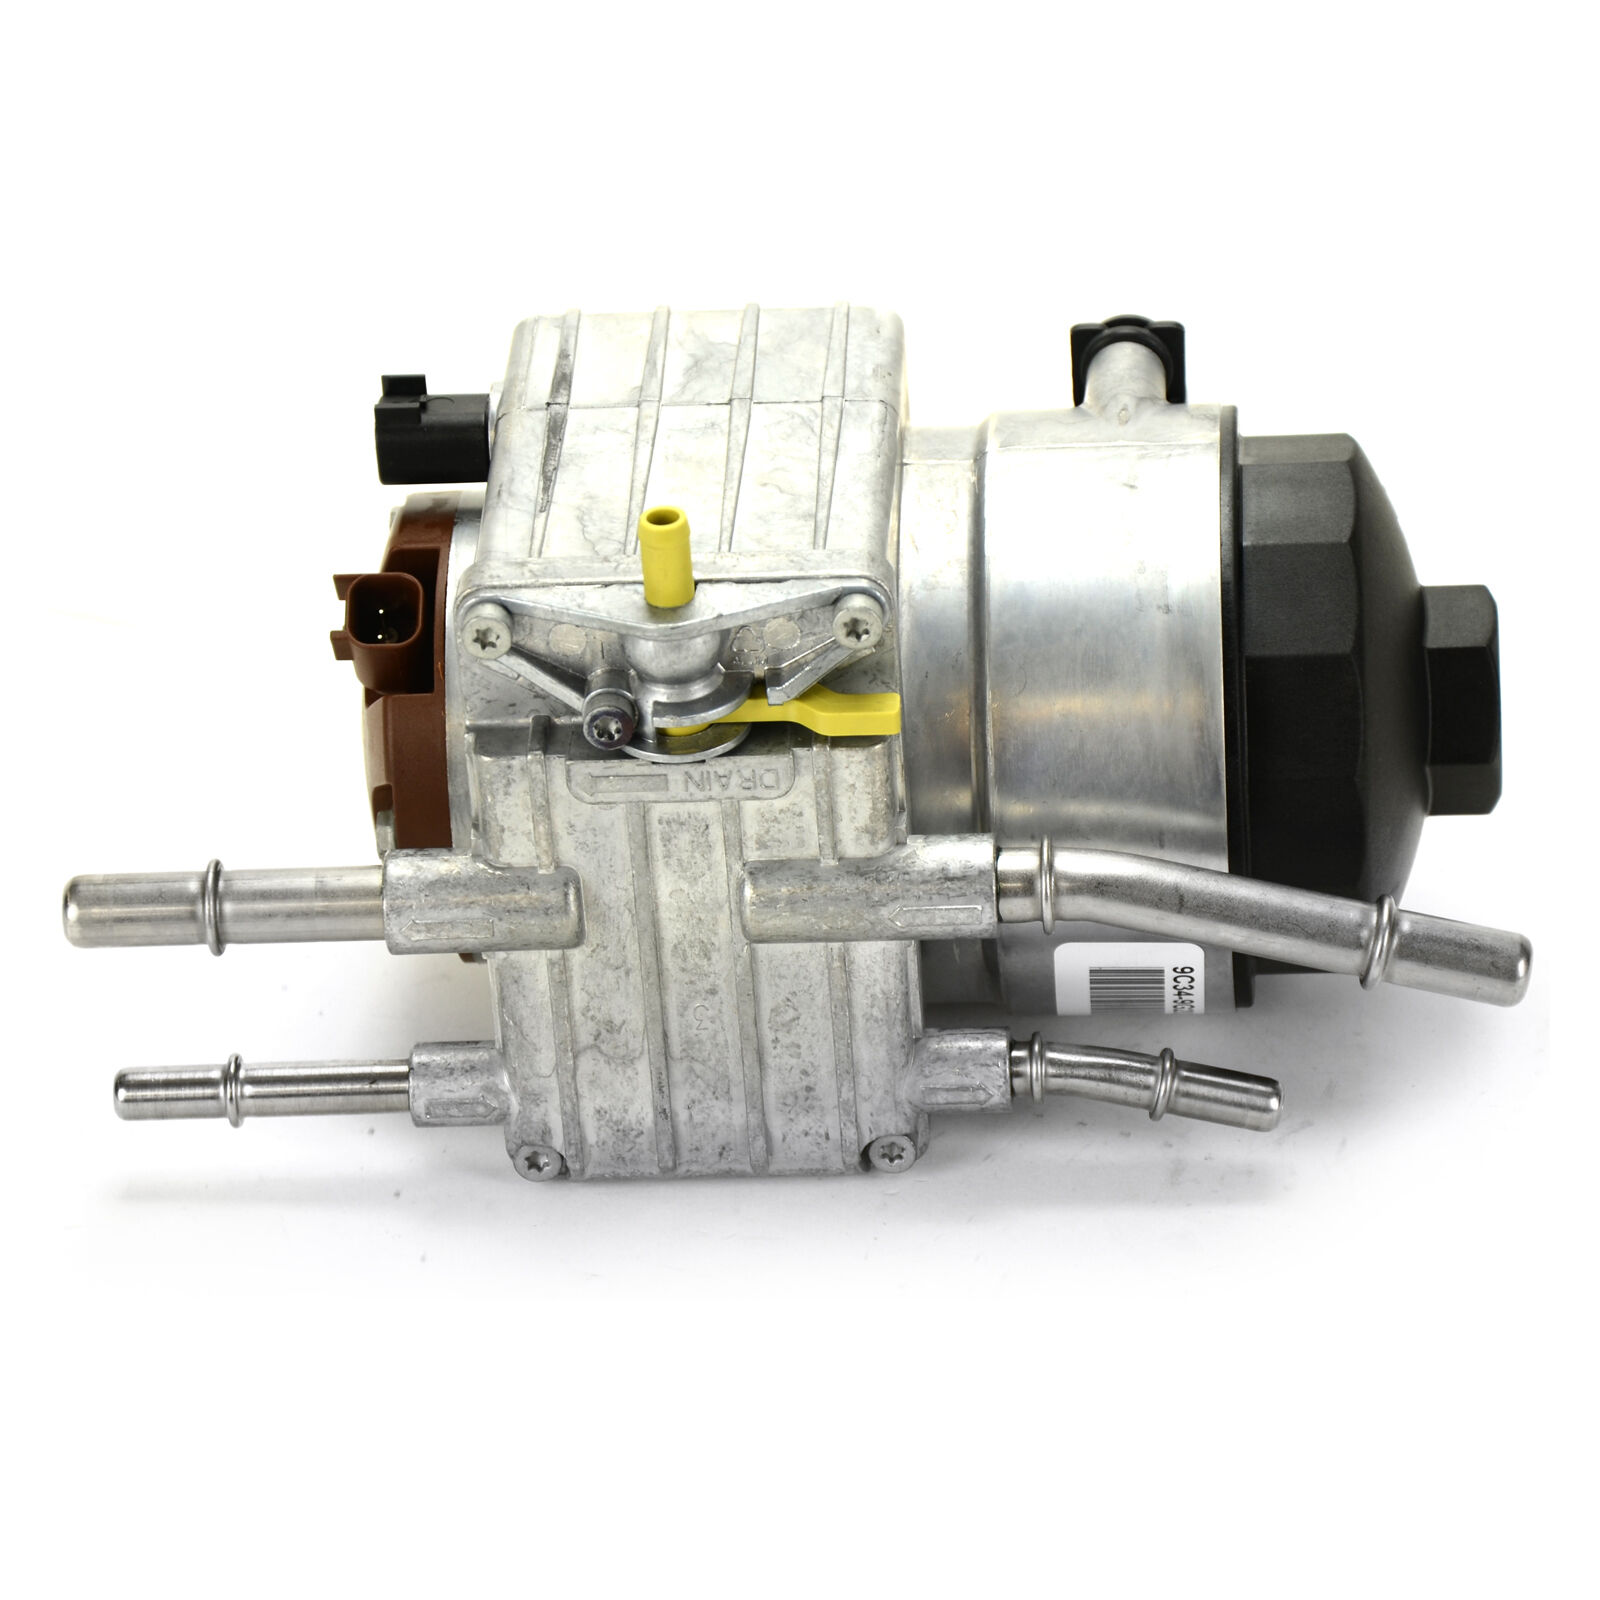 NEW OEM Ford 6.4L Diesel Frame Fuel Pump, Header Manifold, Filter, WIF Sensor